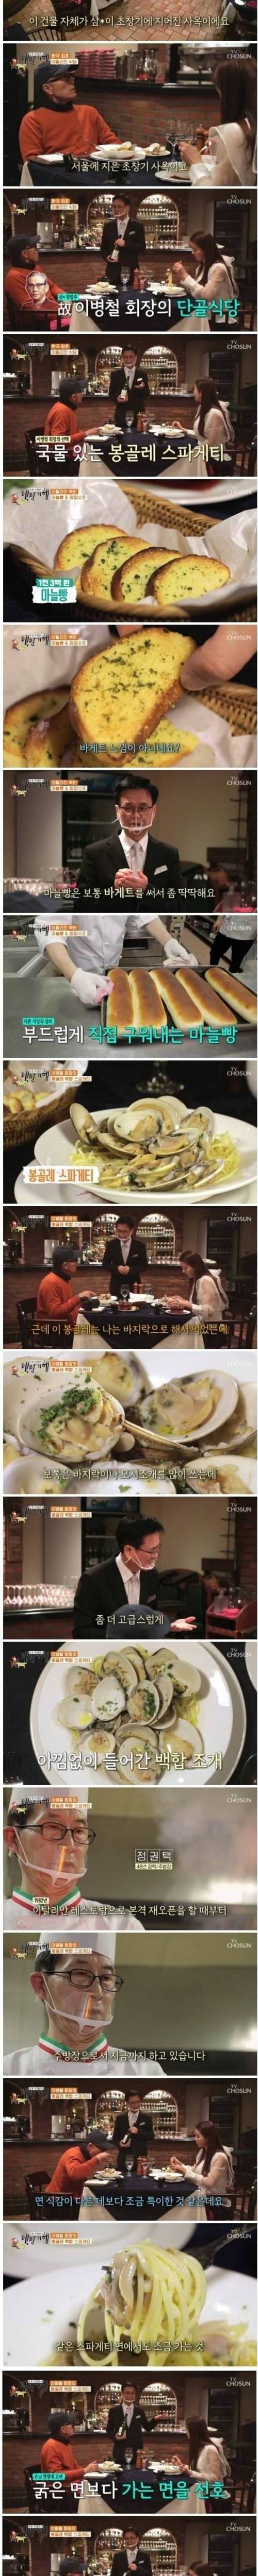 [스압] 한국 최초의 이탈리안 식당.jpg